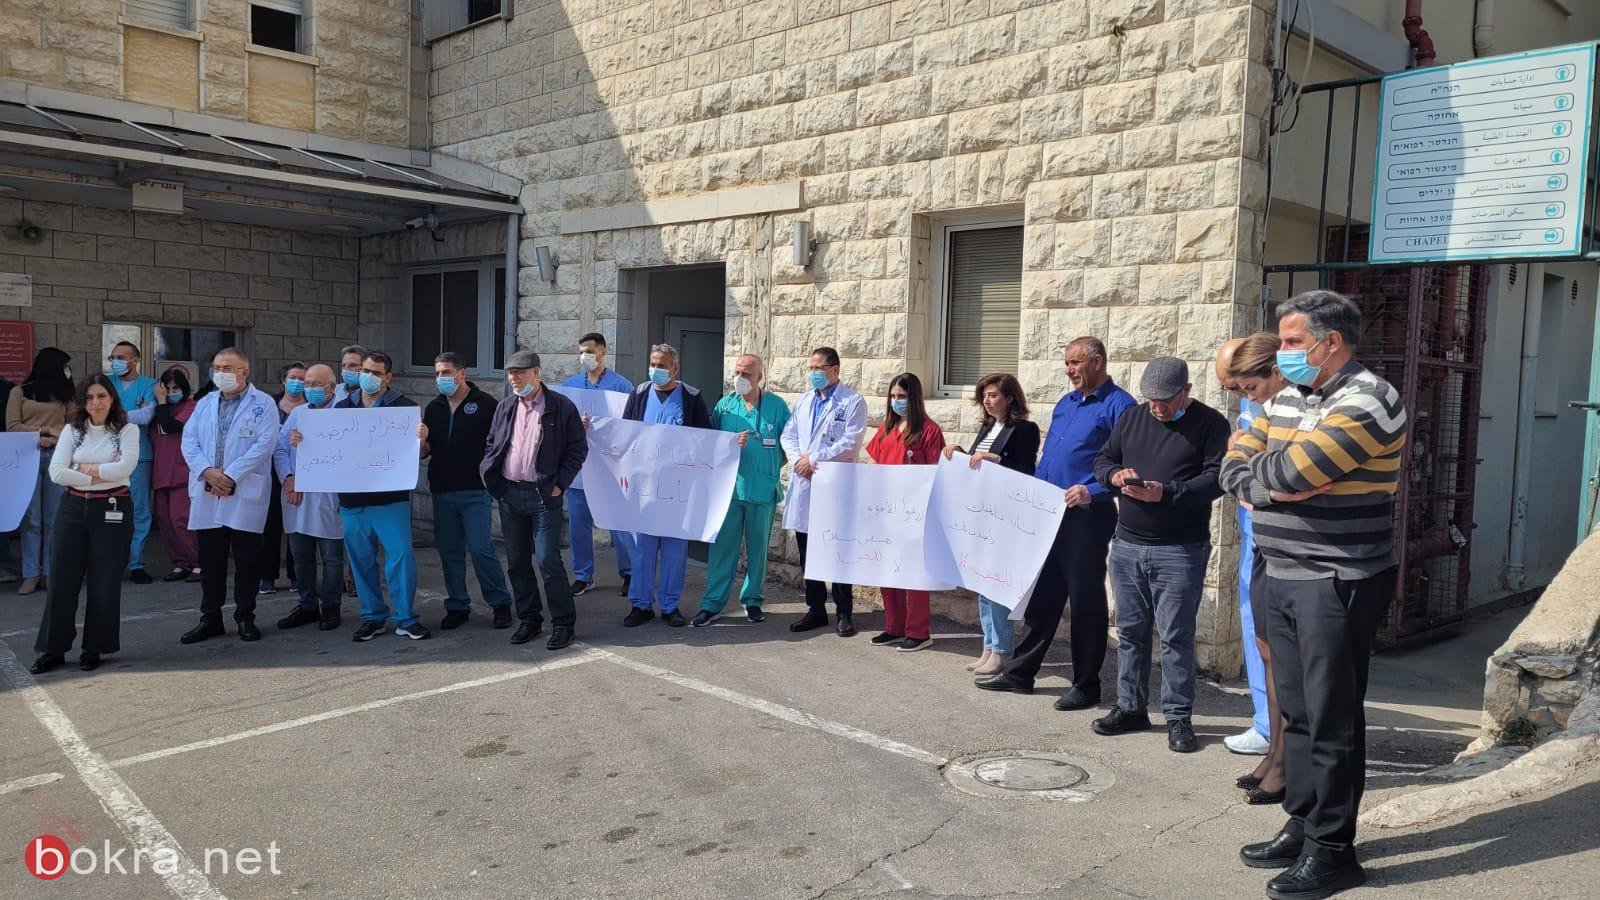 وقفة احتجاجية بعد الإعتداء على ممرض في مستشفى الناصرة-الإنجليزي-4